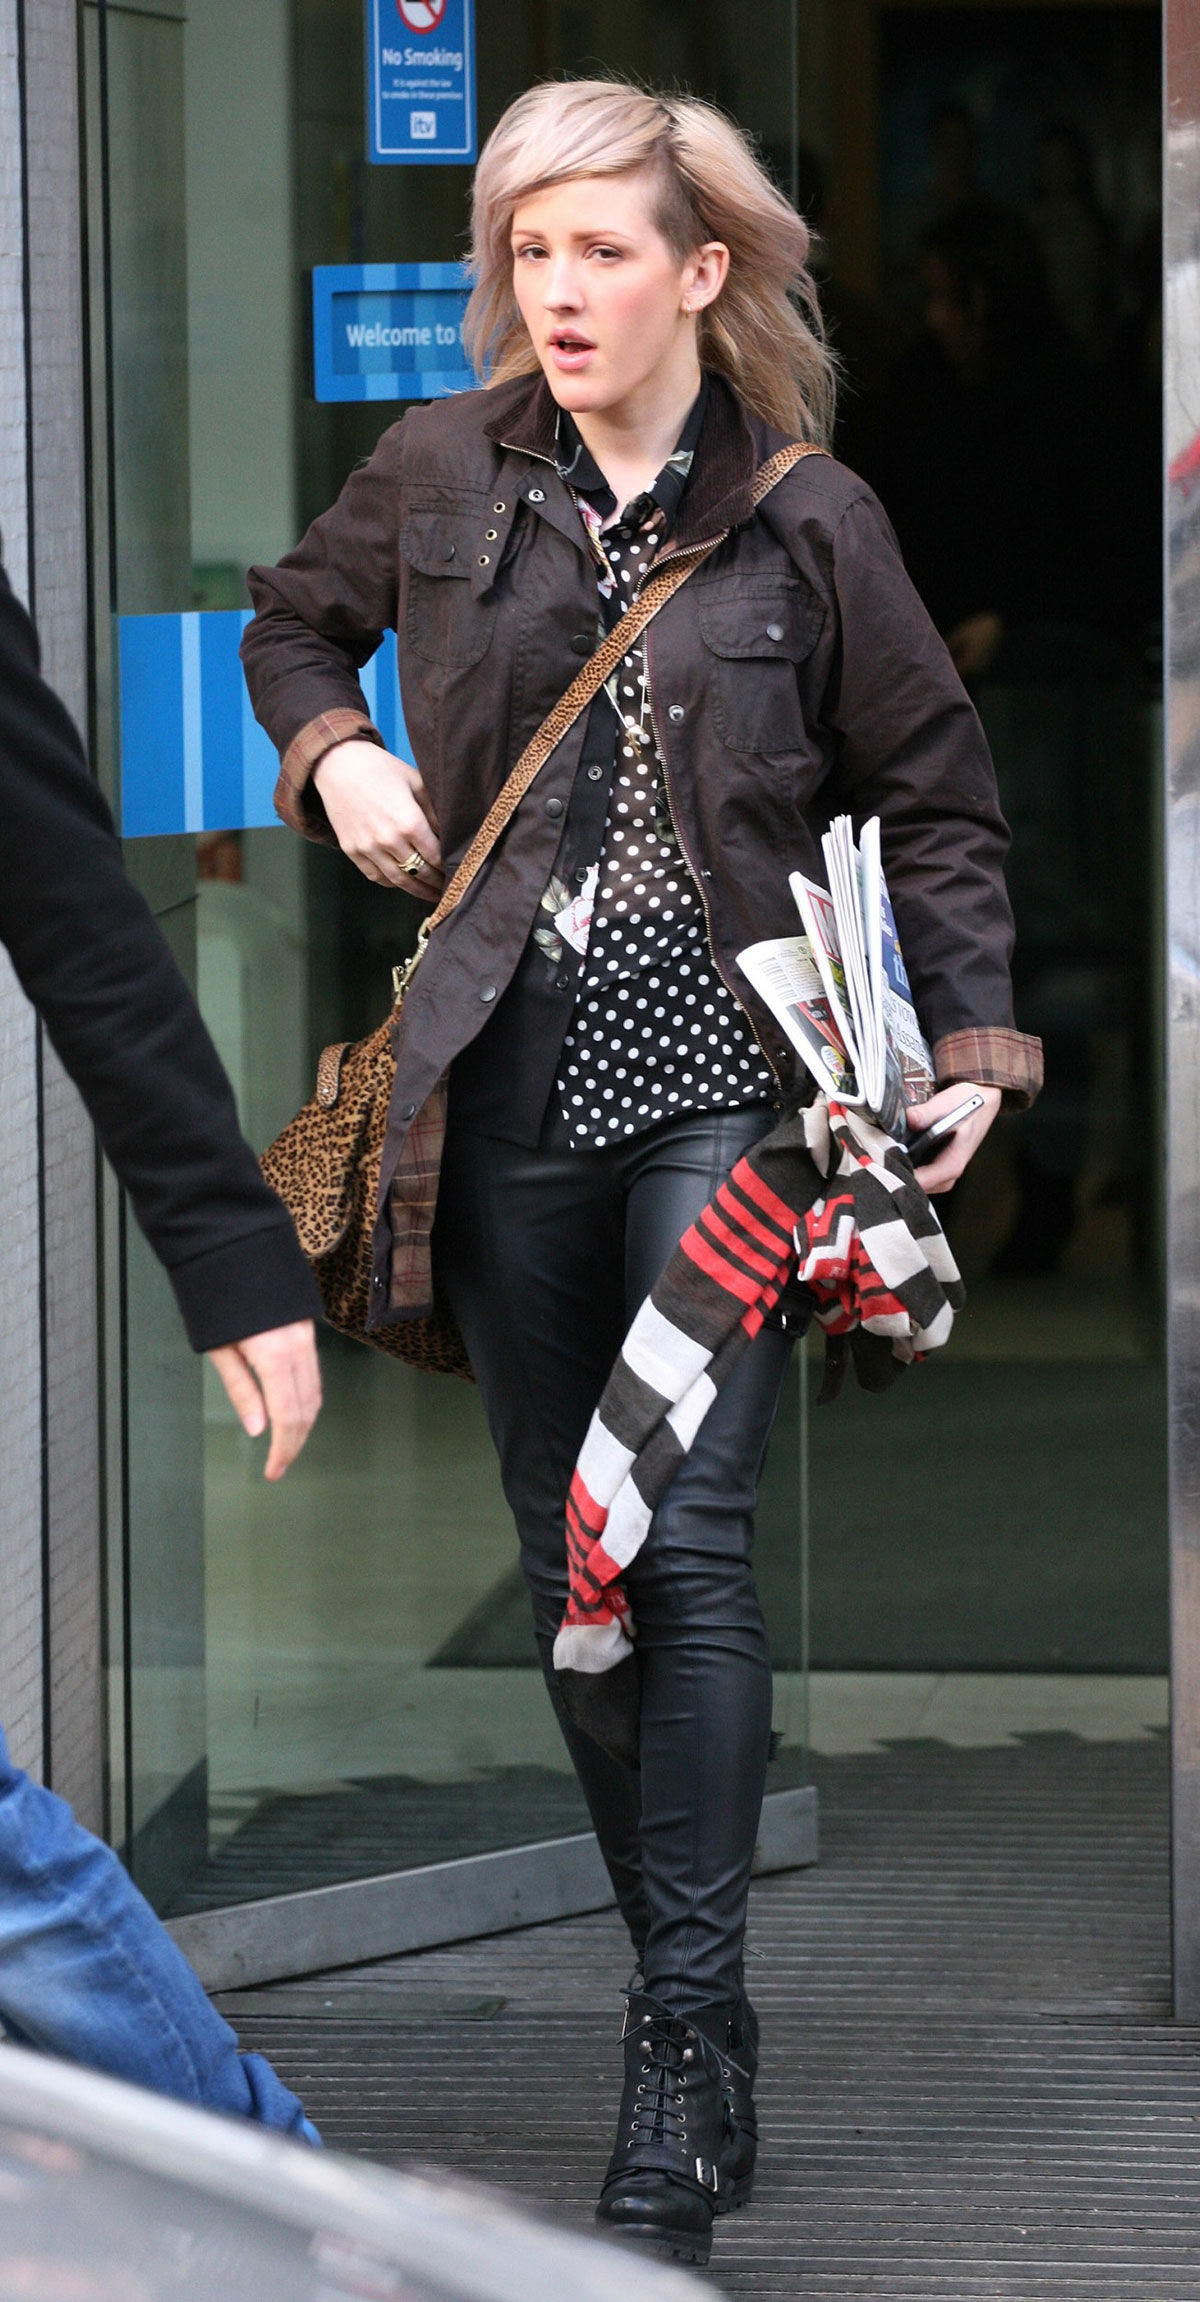 Ellie Goulding leaving the ITV Studios